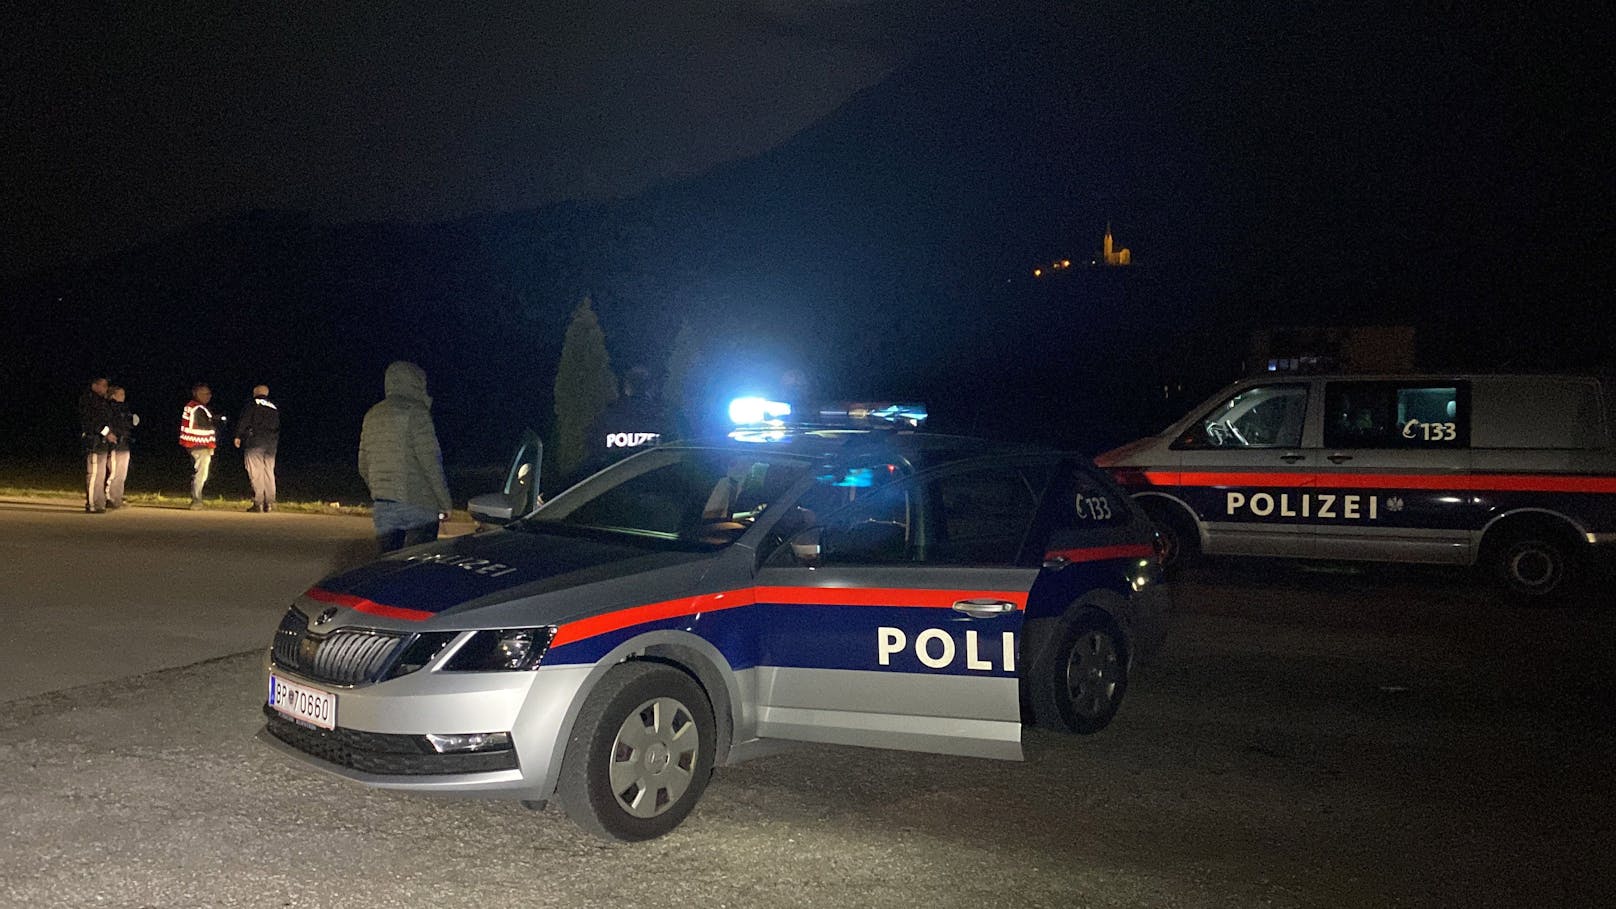 In Ebbs (Bezirk Kufstein) ist es am Freitagabend zu einer Messerattacke gekommen. Ersten Informationen zufolge ist ein Jugendlicher niedergestochen worden. 